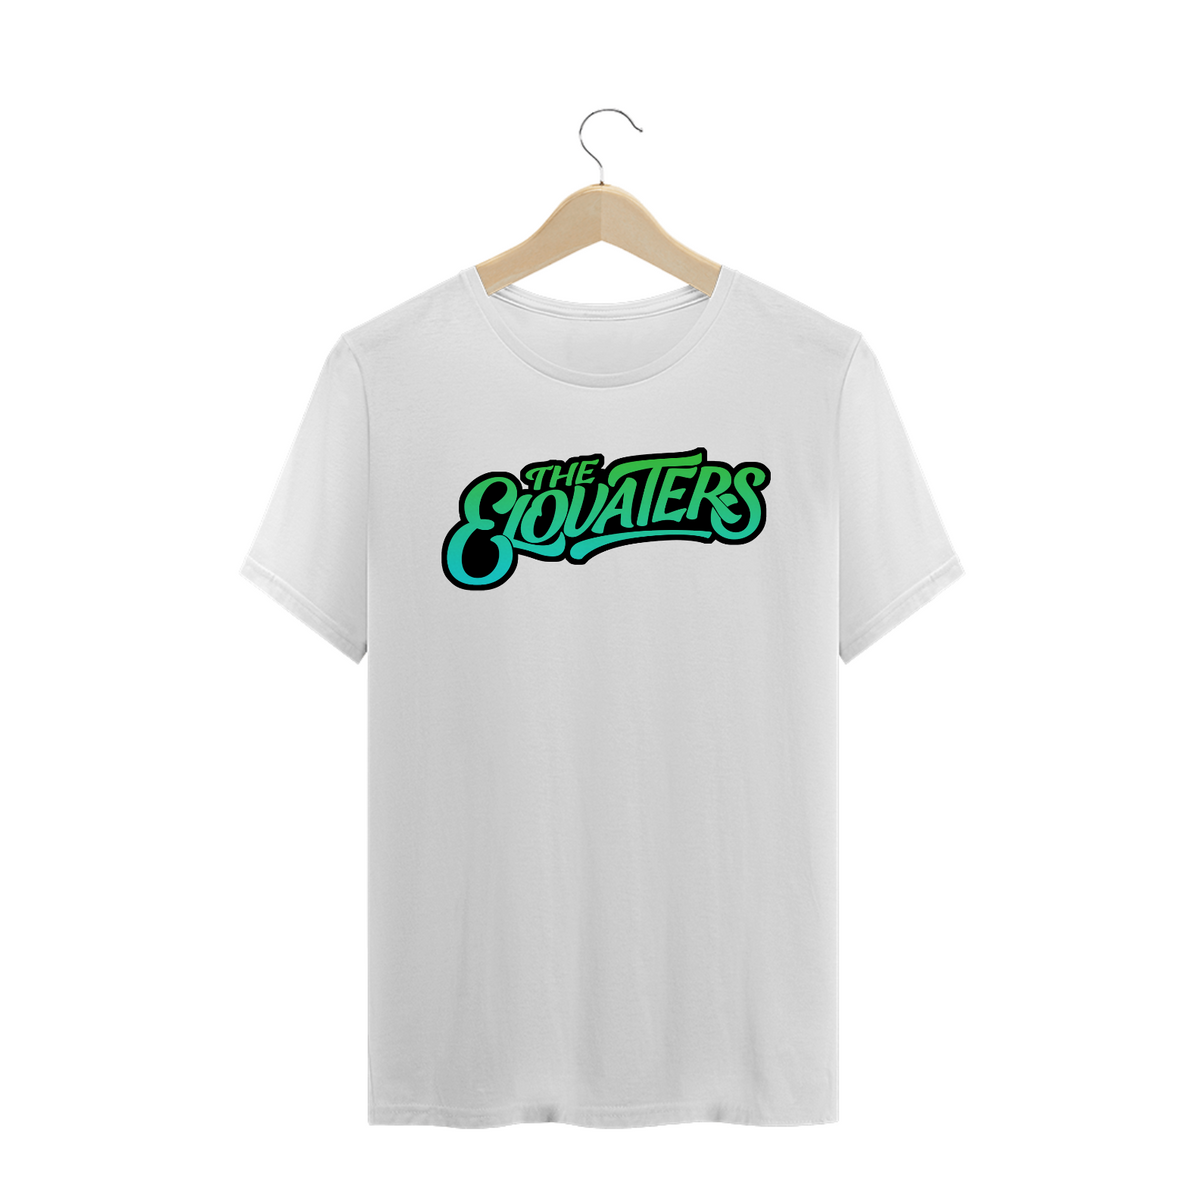 Nome do produto: Camisa The Elovaters - Logo Azul e Verde